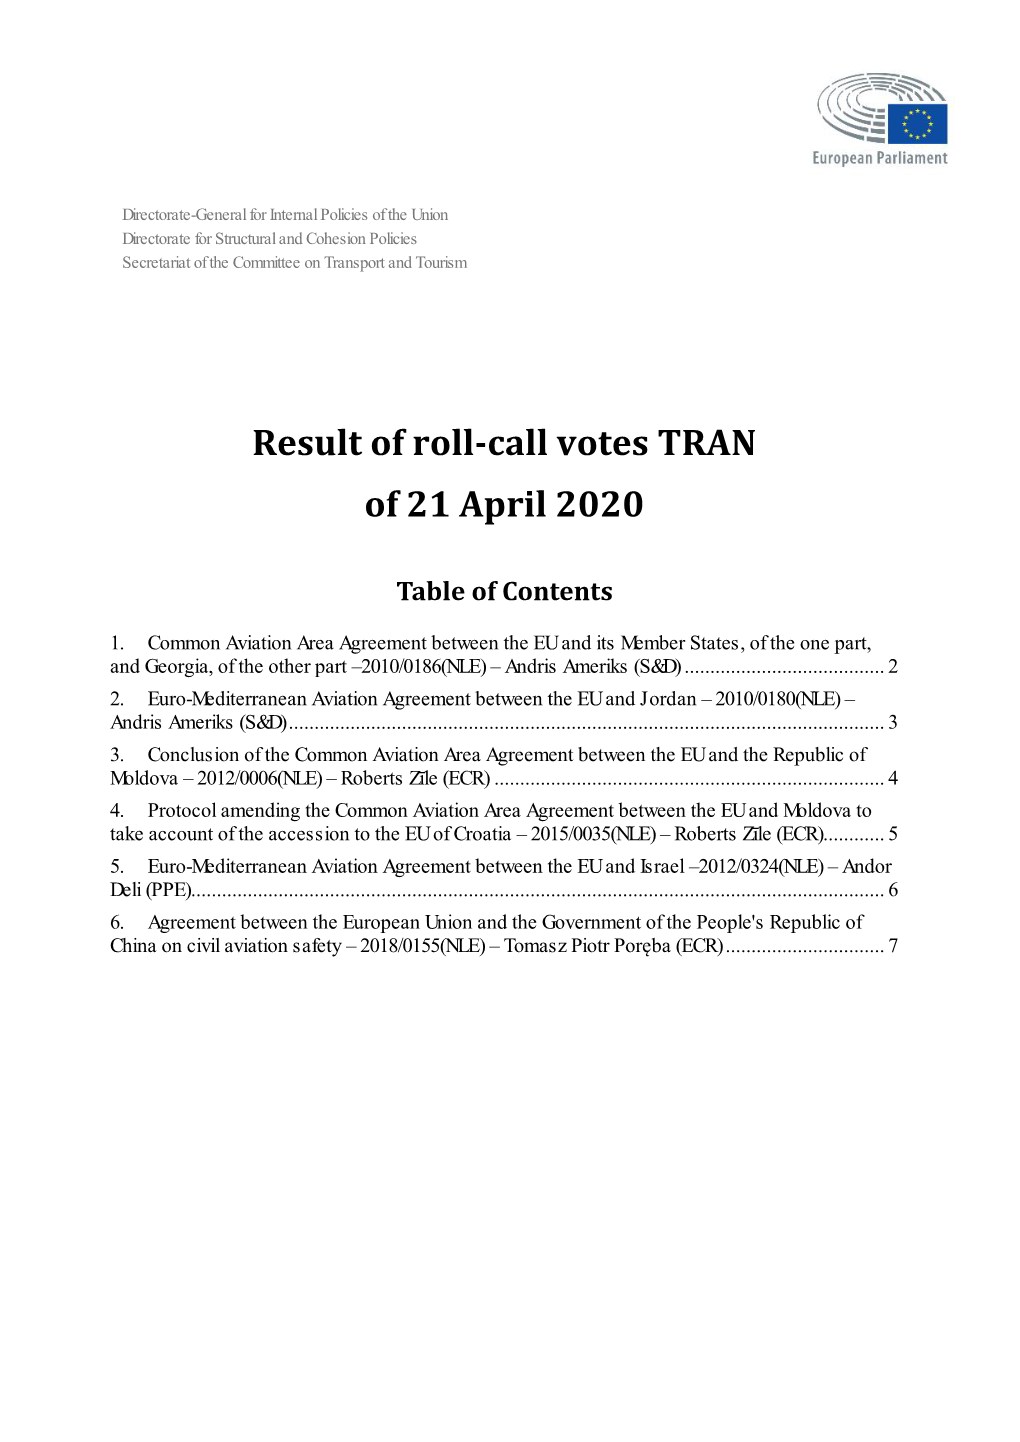 TRAN Roll-Call Vote 21 April 2020